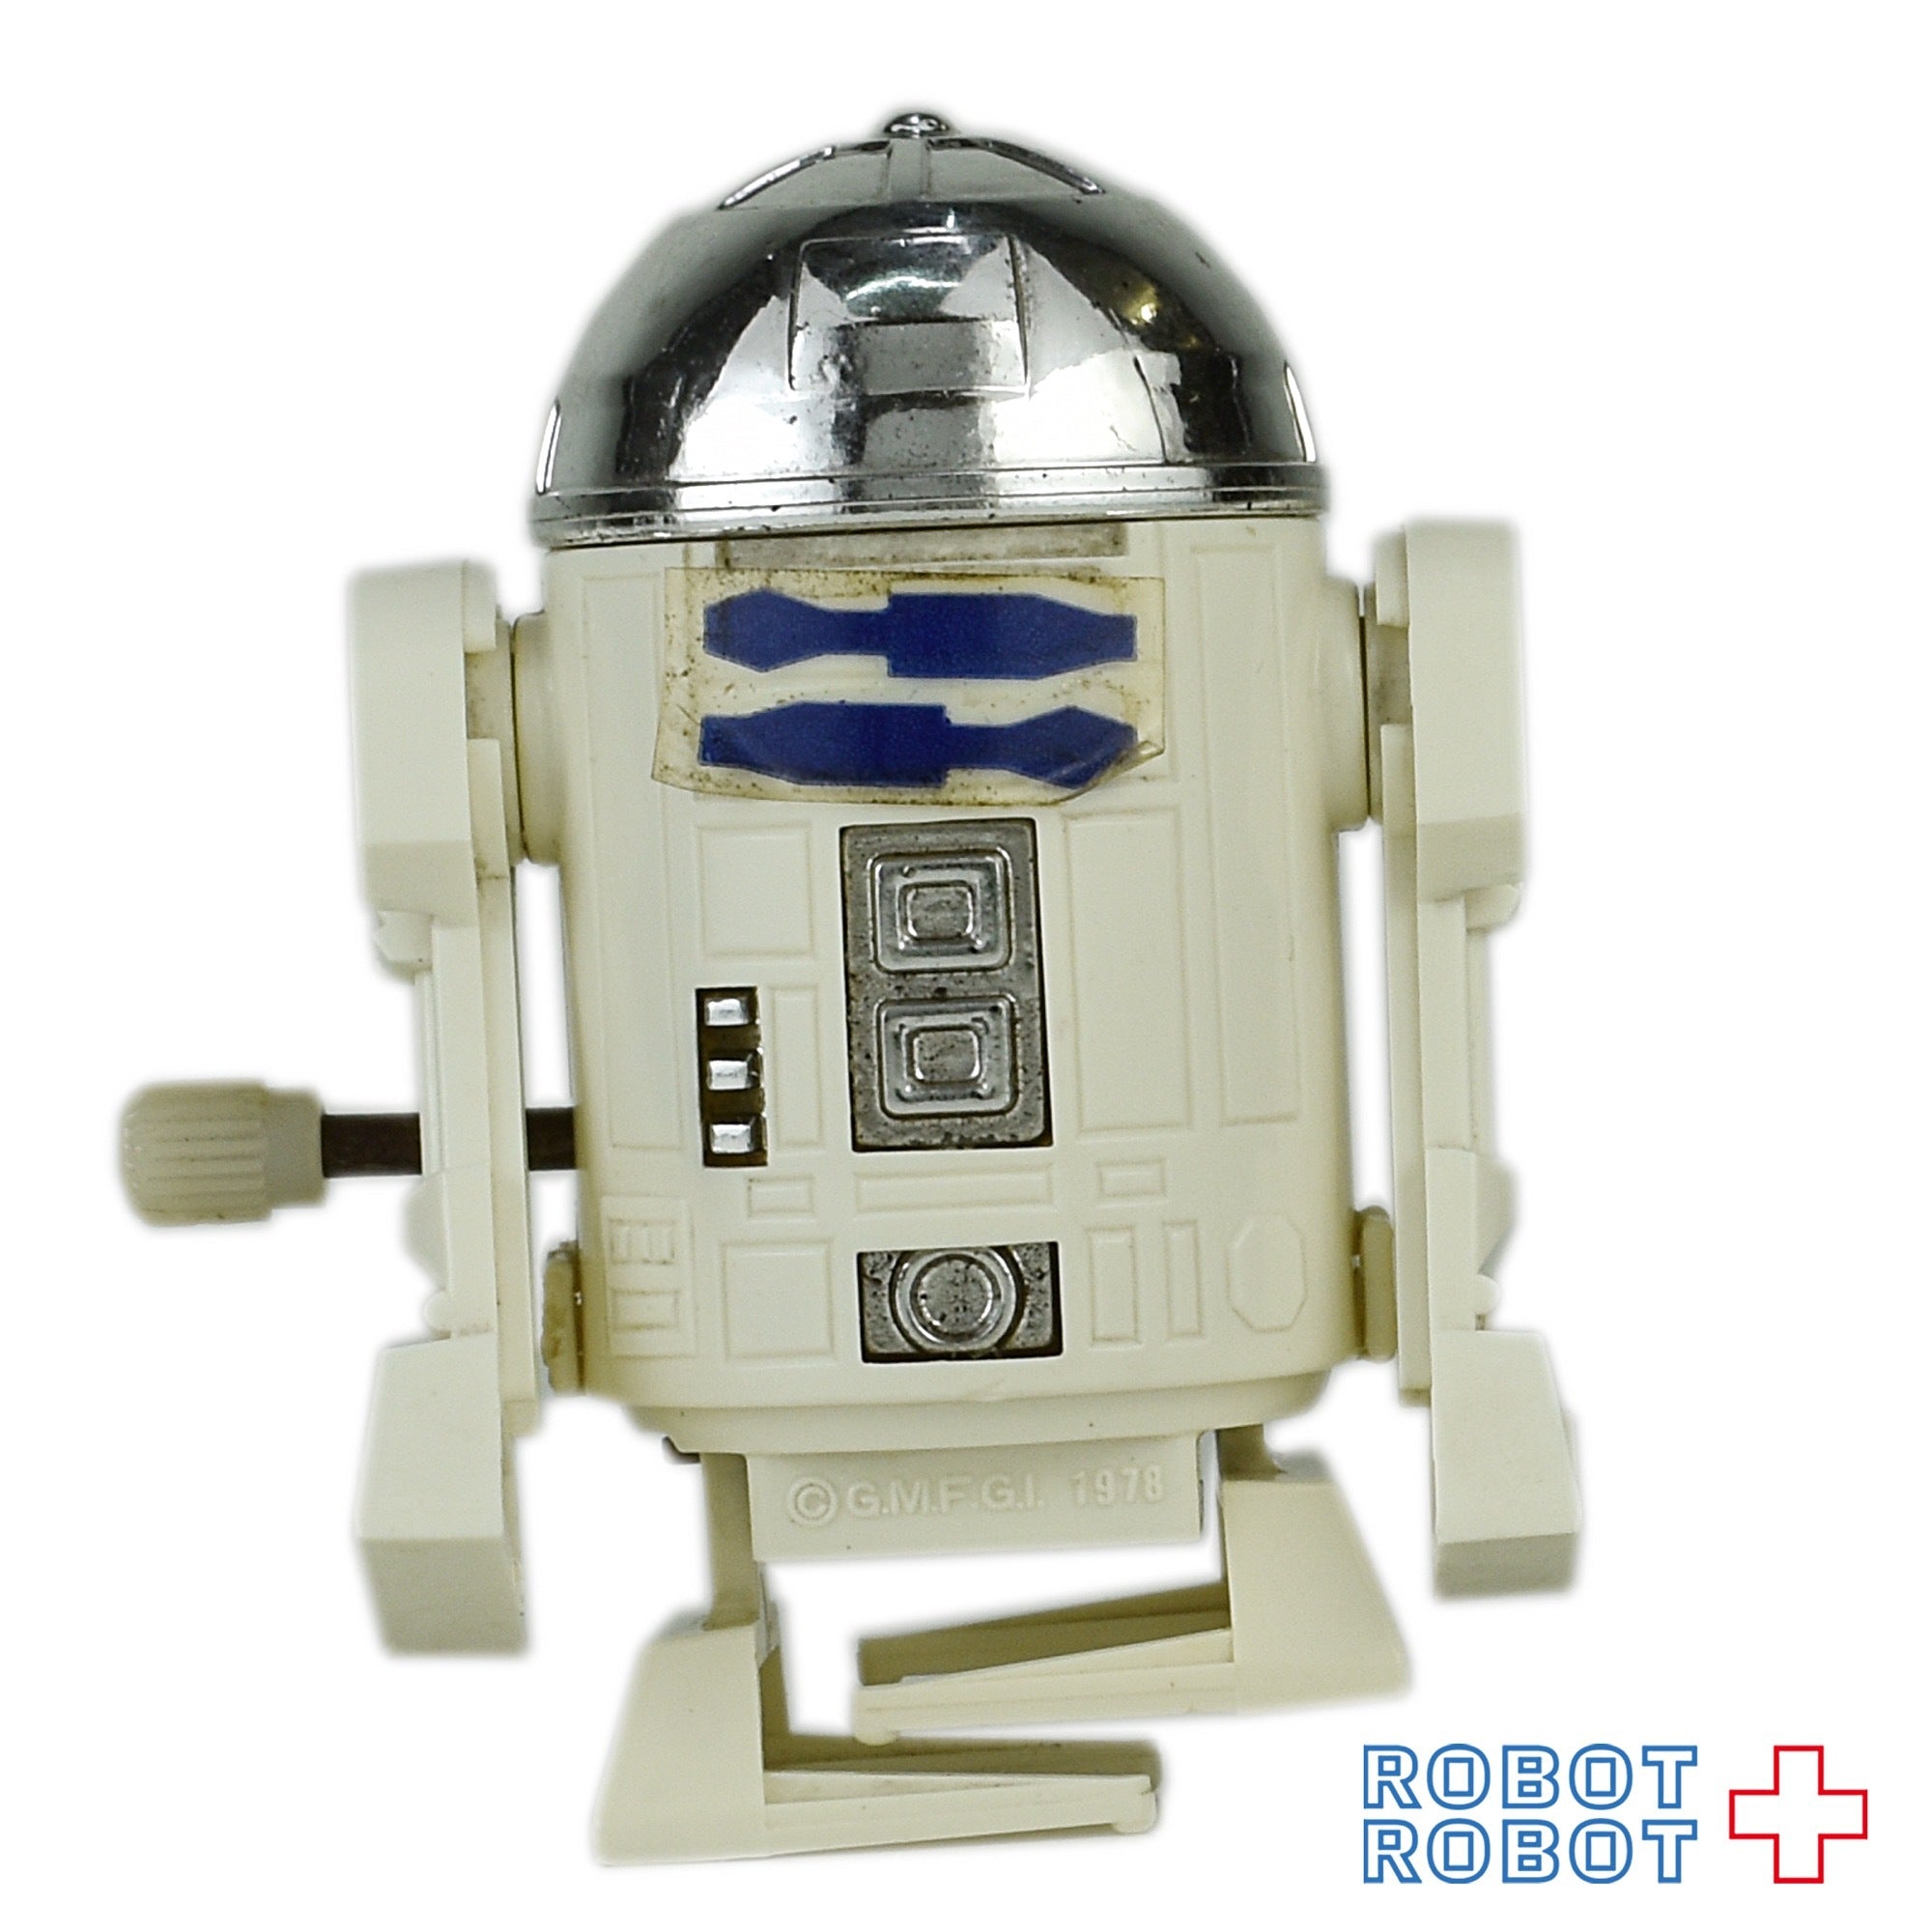 タカラ スター・ウォーズ R2-D2トコトコ ゼンマイ – ROBOTROBOT